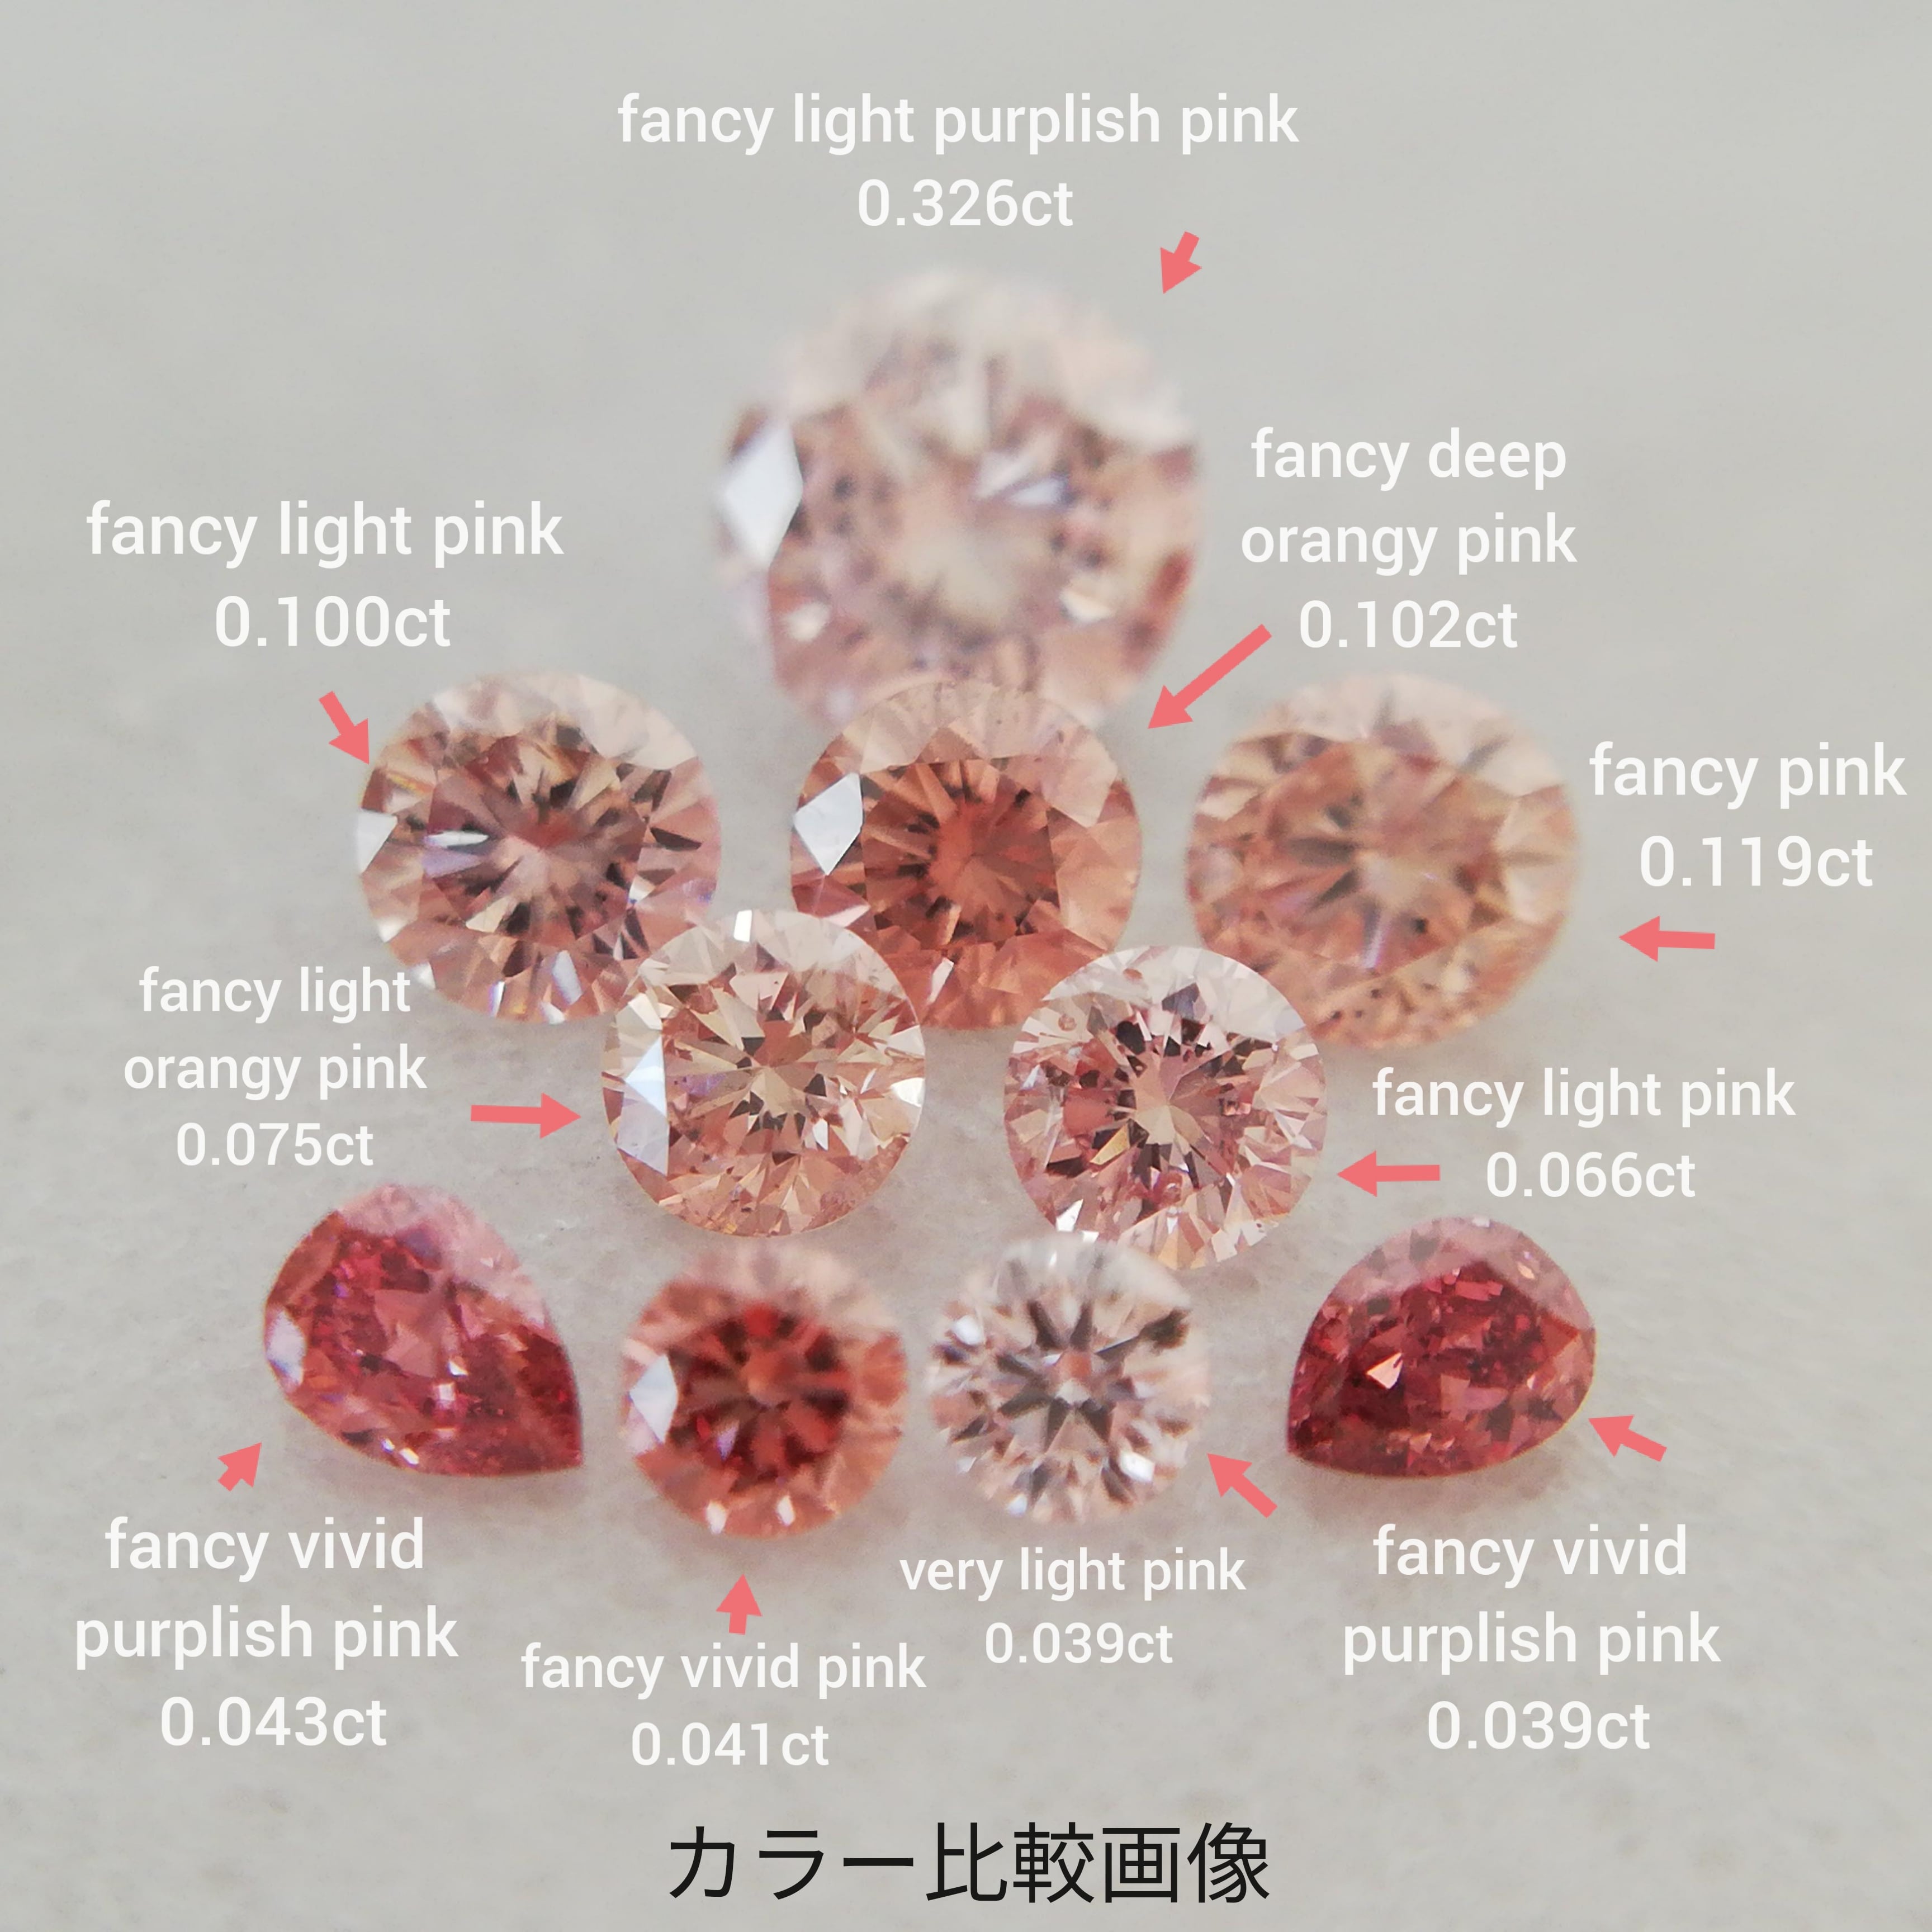 ピンクダイヤモンドルース 0.119ct fancy pink I1(CGL)